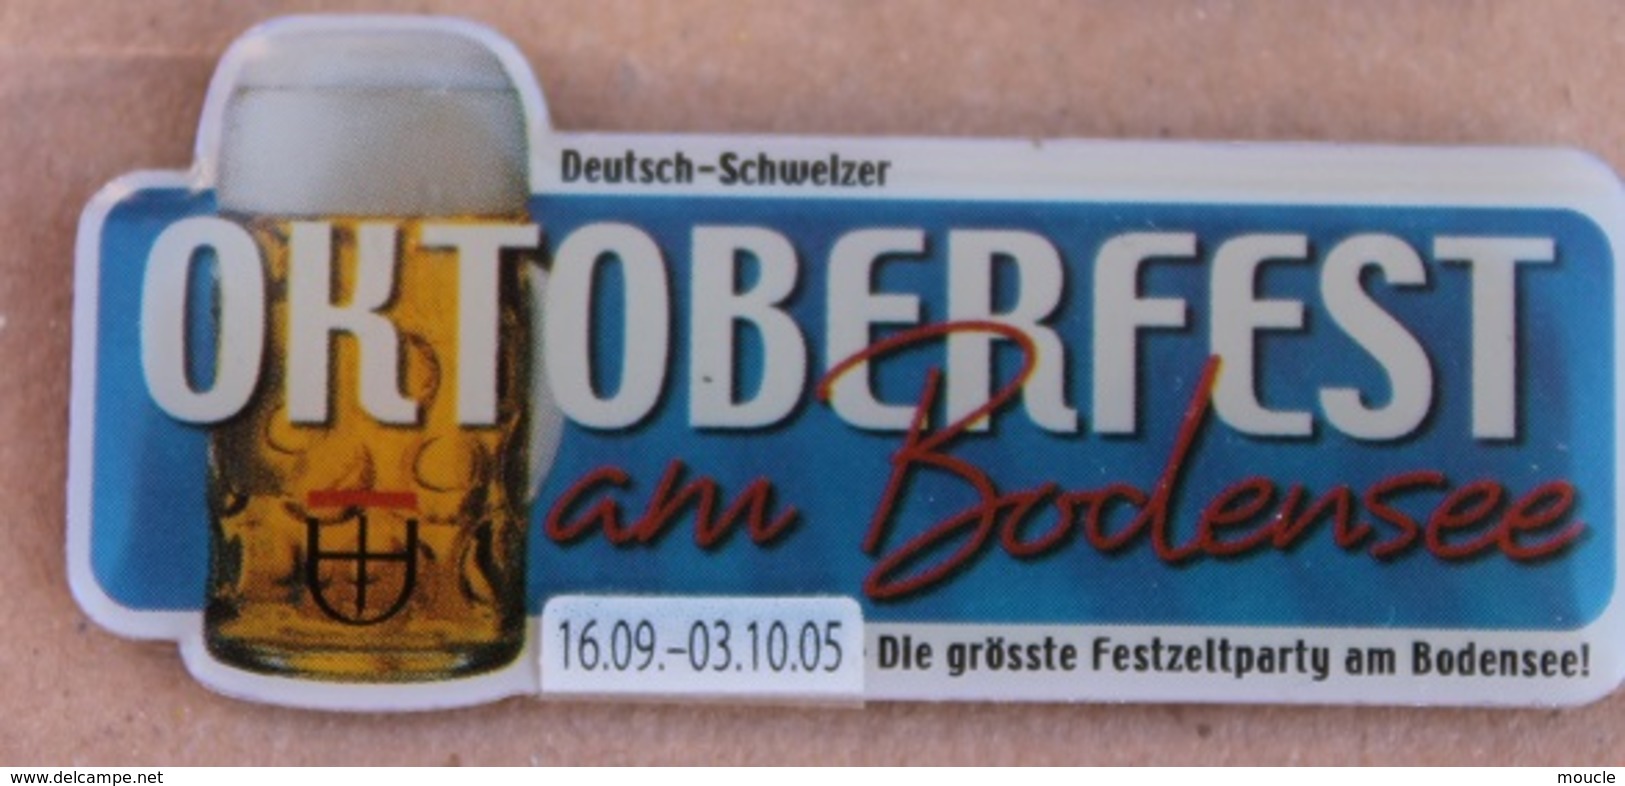 OKTOBERFEST AM BODENSEE - 19-09 / 03-10 05 - DIE GRÖSSE FESTZELTPARTY AM BODENSEE ! - BIERE - BEER - CHOPE      (16) - Cerveza